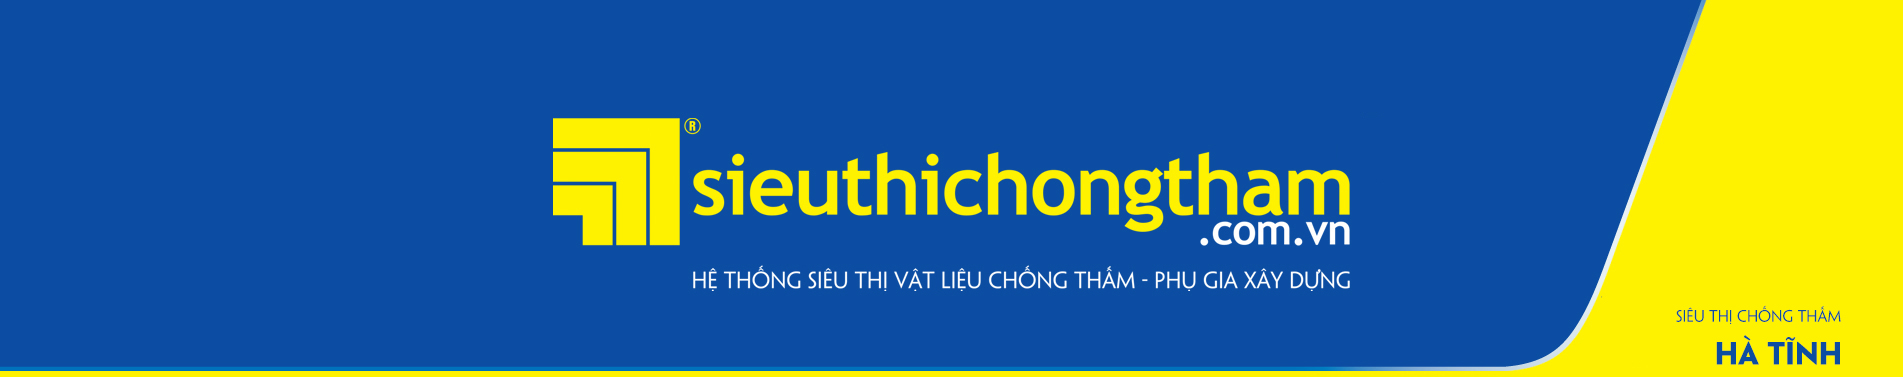 Sieu Thi Chong Tham Ha Tinh